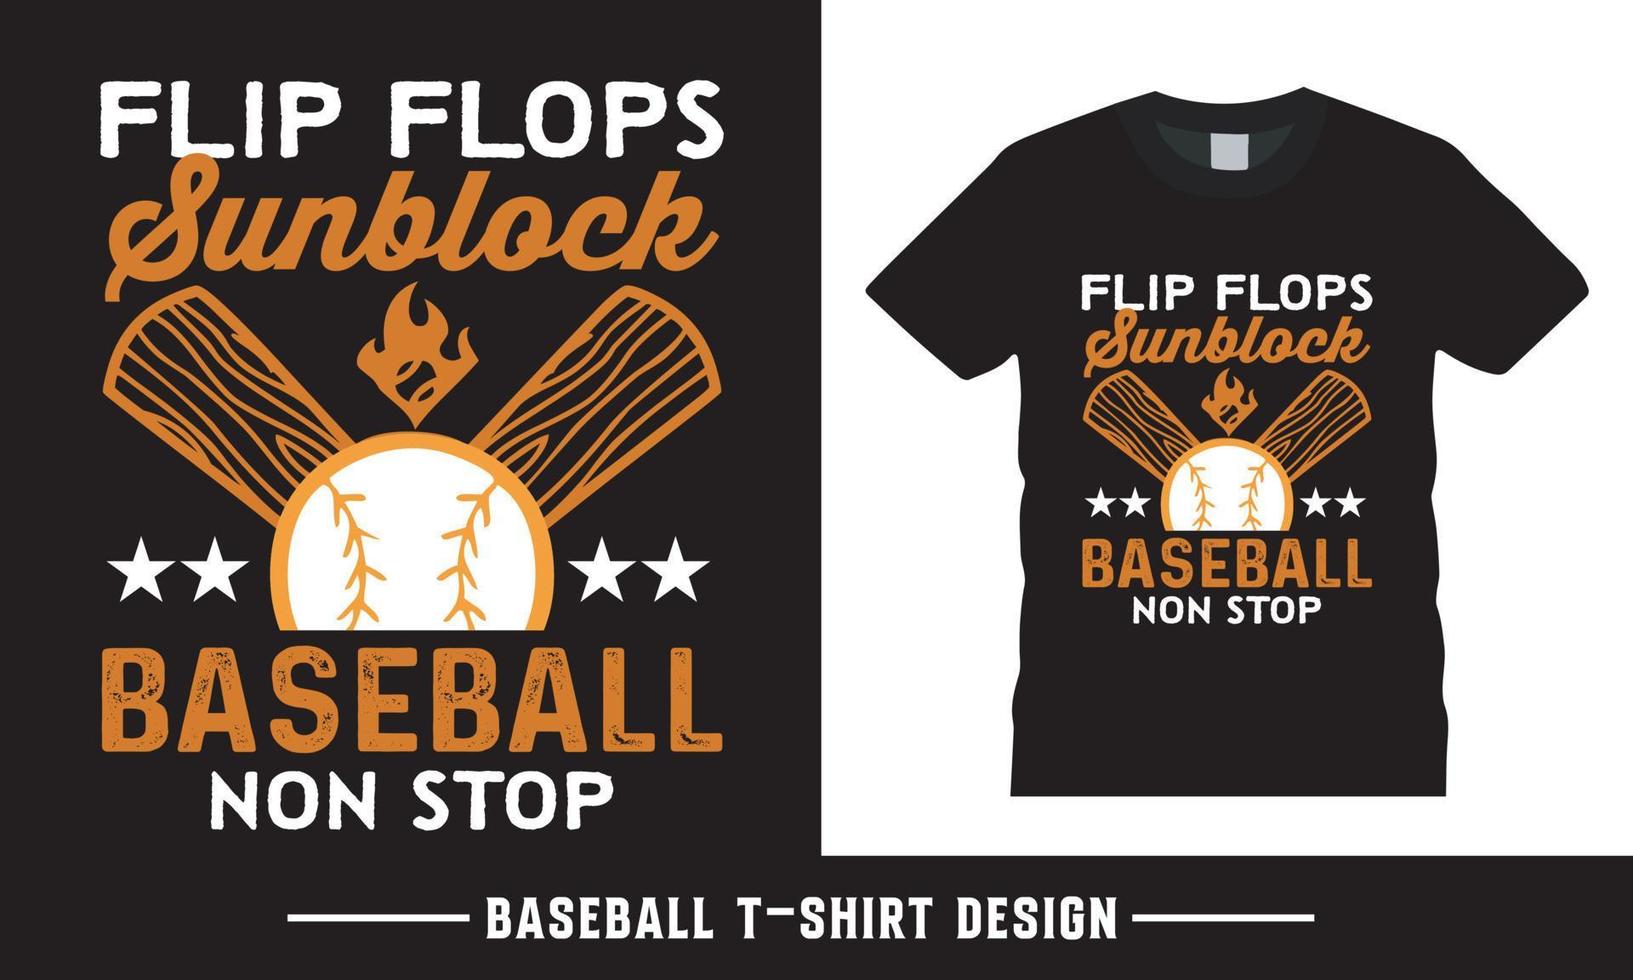 base-ball chemise conception, base-ball typographie vecteur T-shirt conception modèle